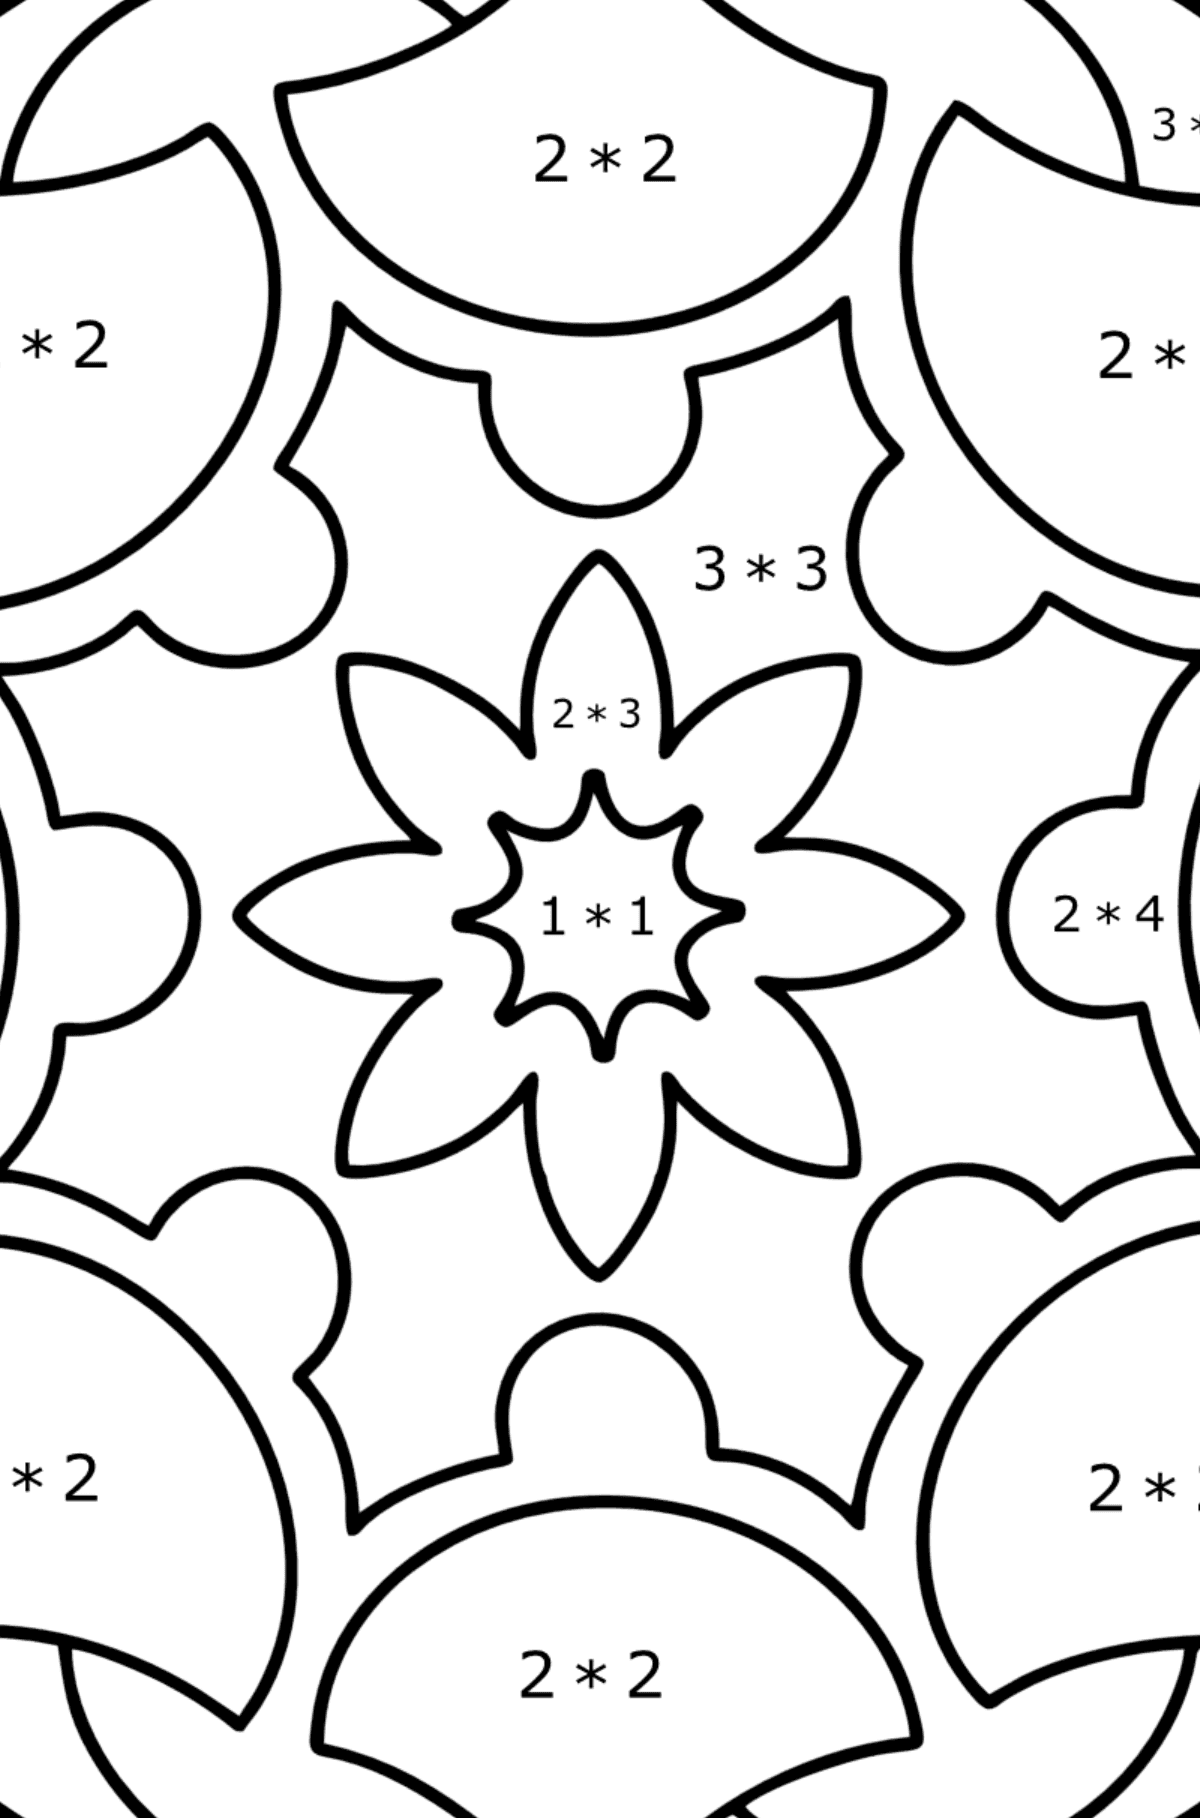 Omalovánka Mandala 7 - Matematická Omalovánka - Násobení pro děti